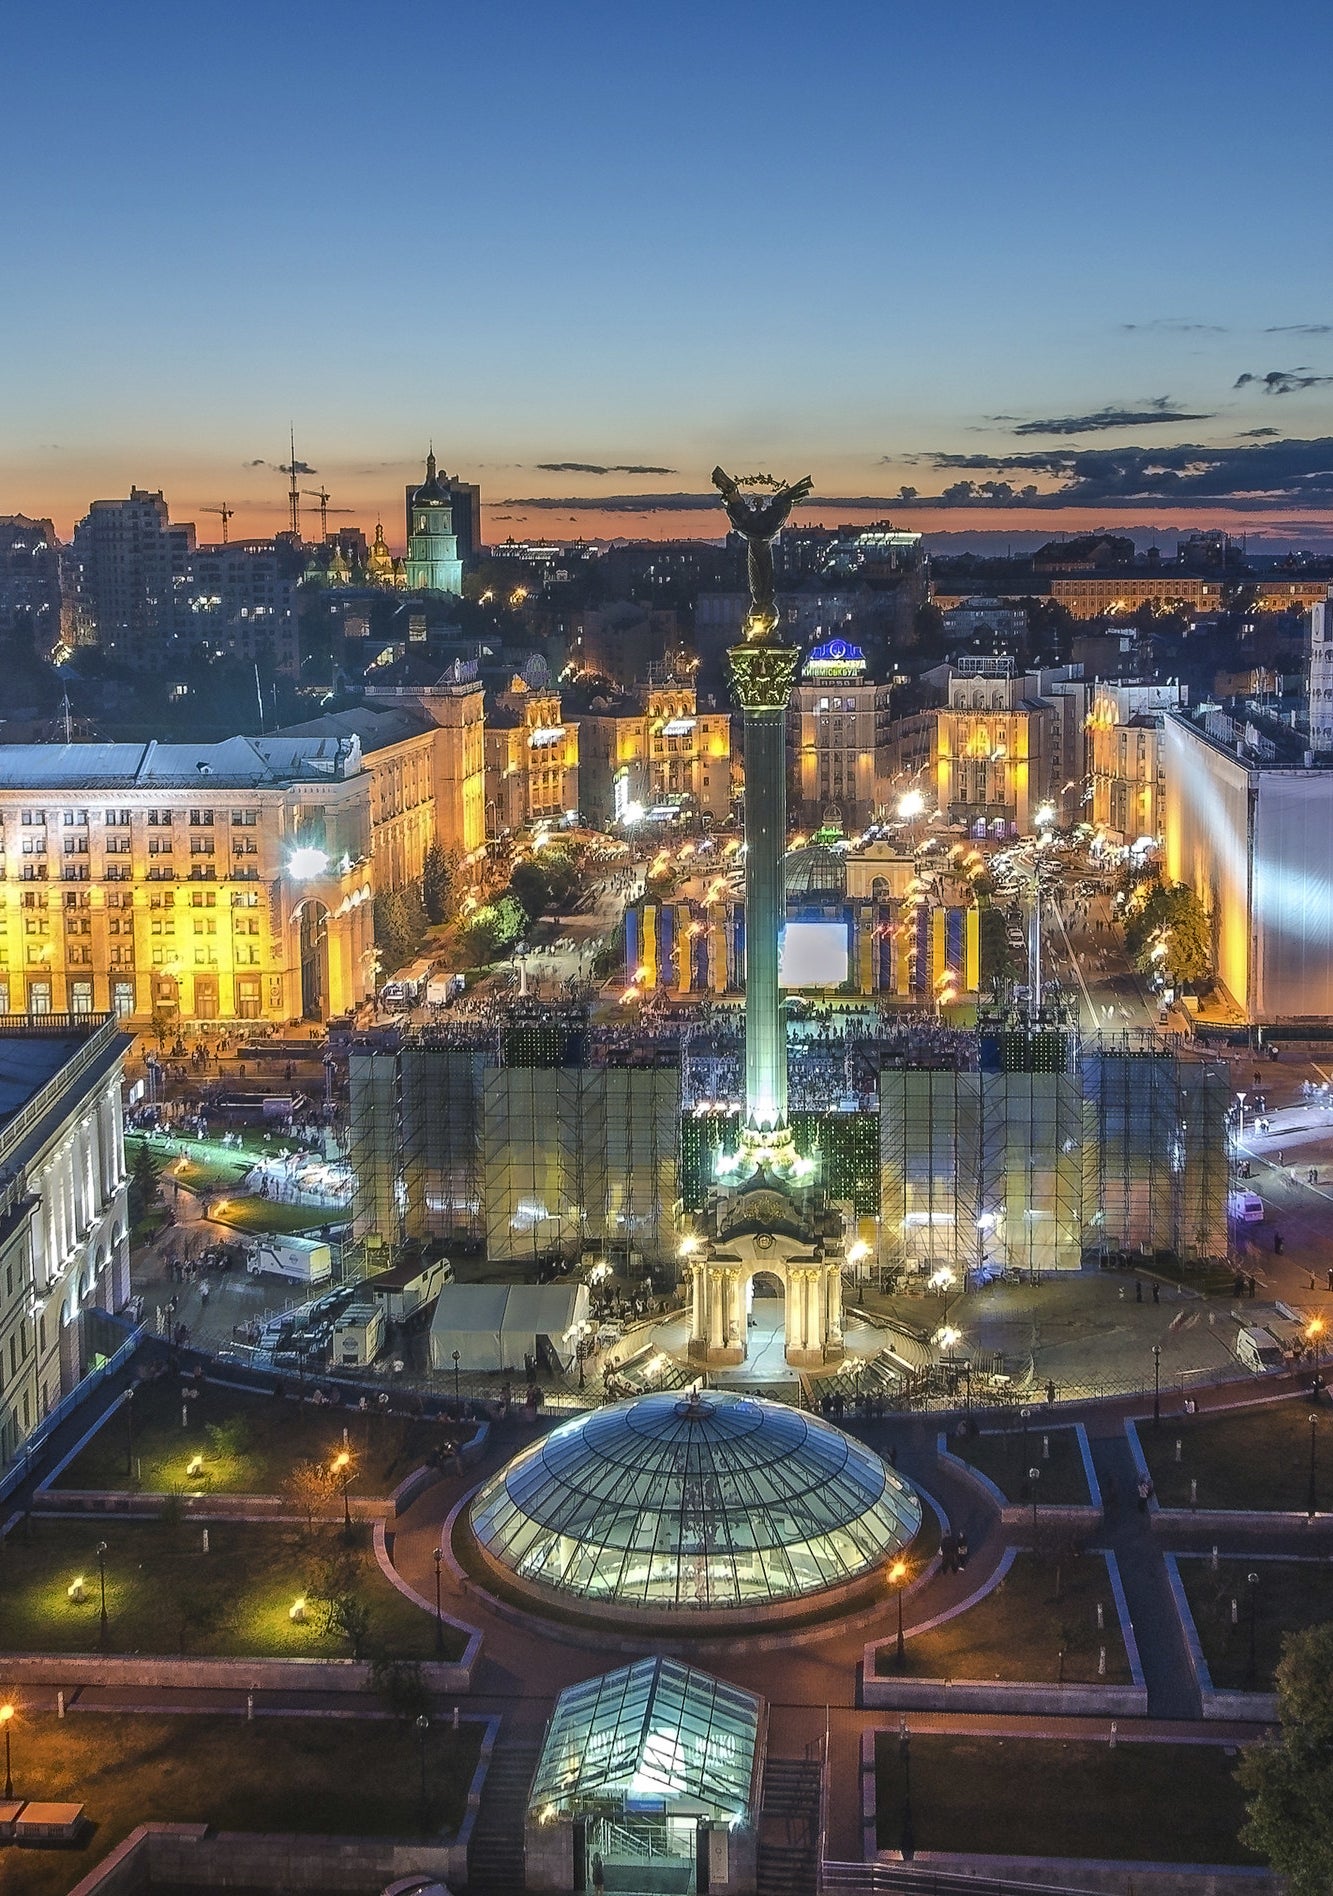 Independence Square in Kiev